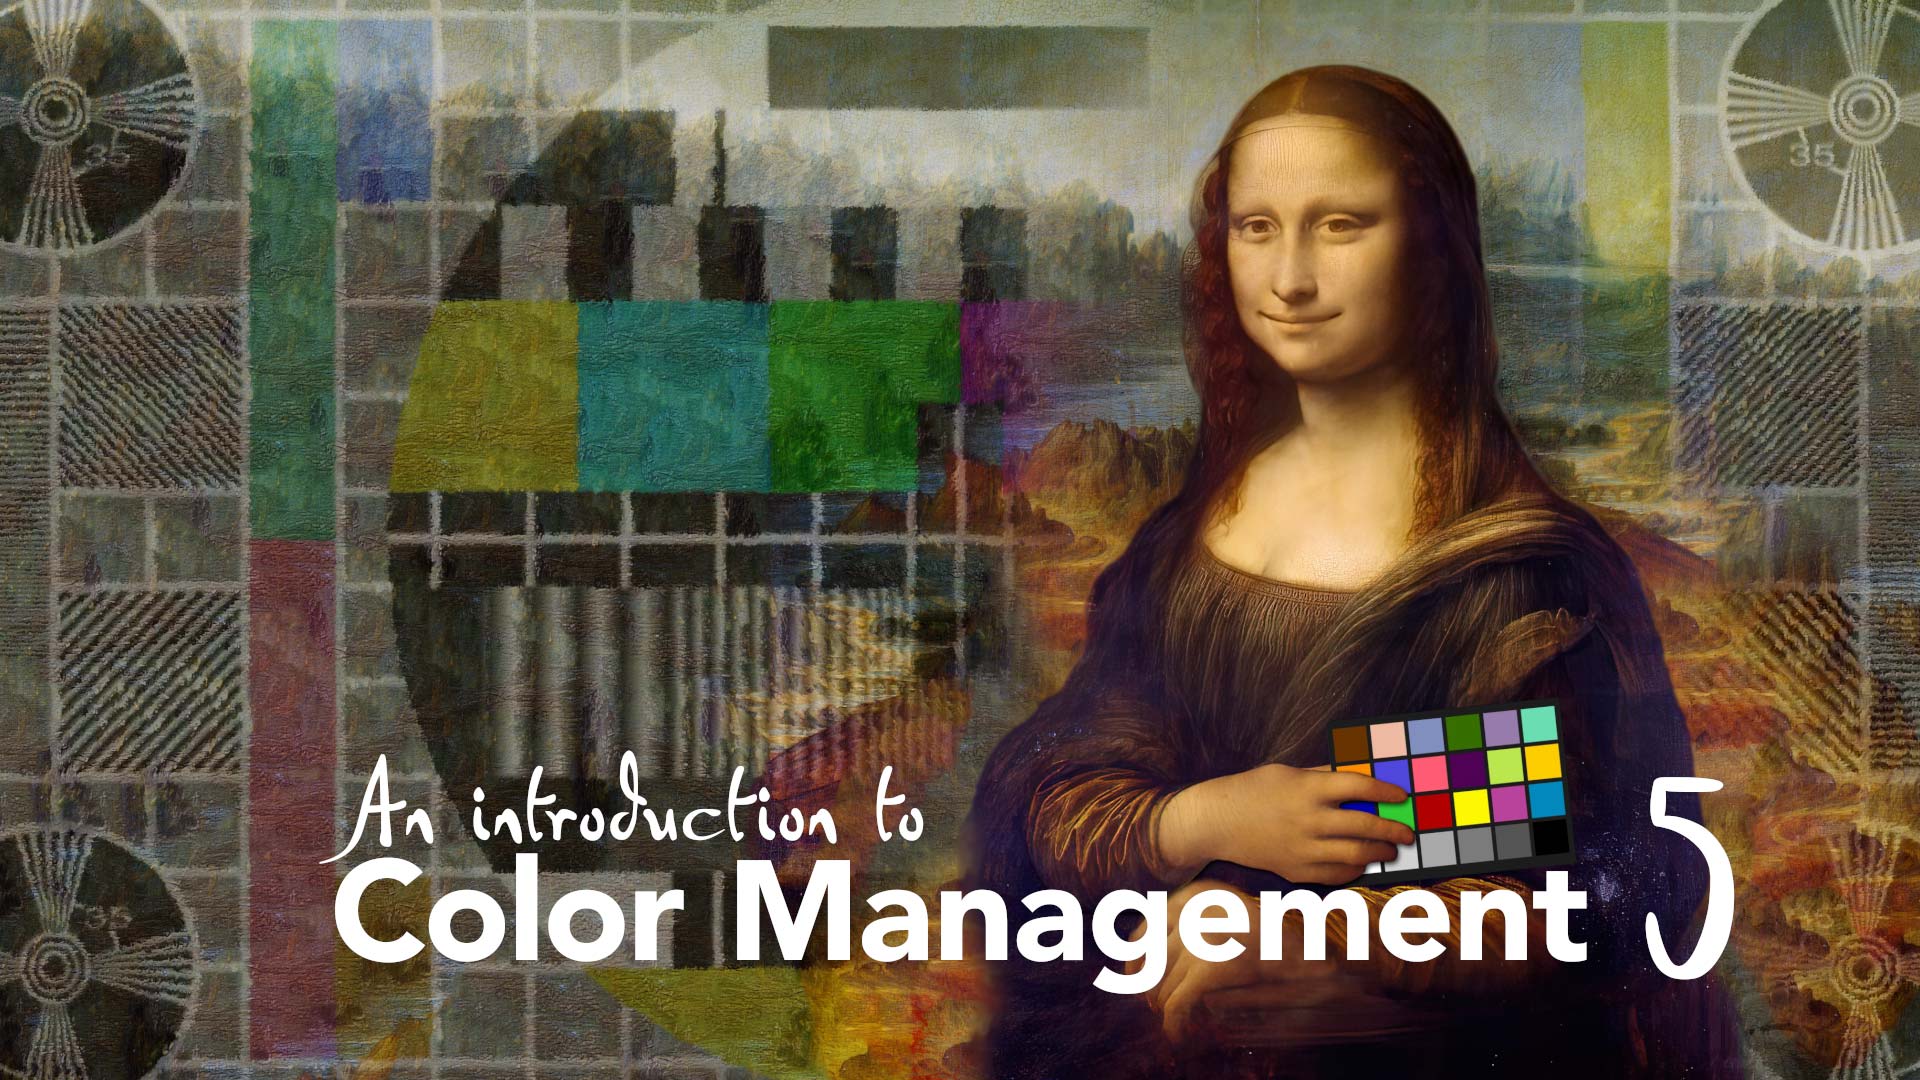 Color Management Part 5: Introducing CIE 1931 1